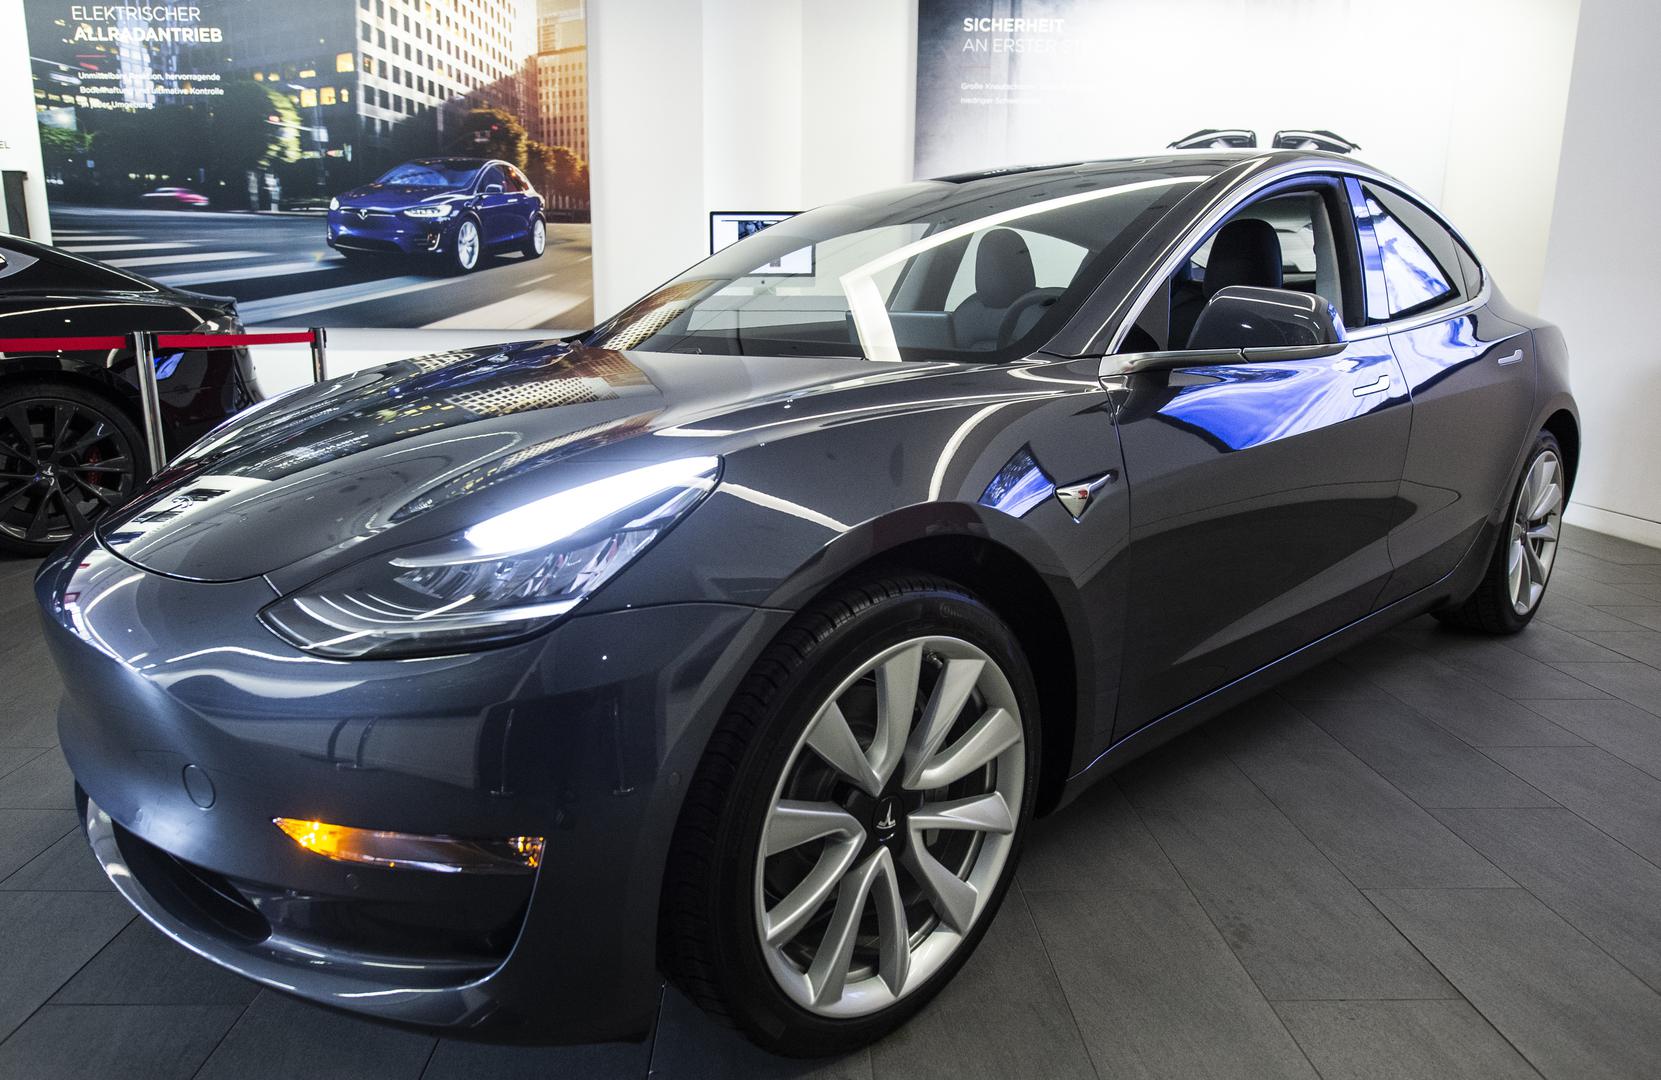 Šef Tesle Elon Musk rekao je da se isporuka automobila očekuje u veljači i ožujku.